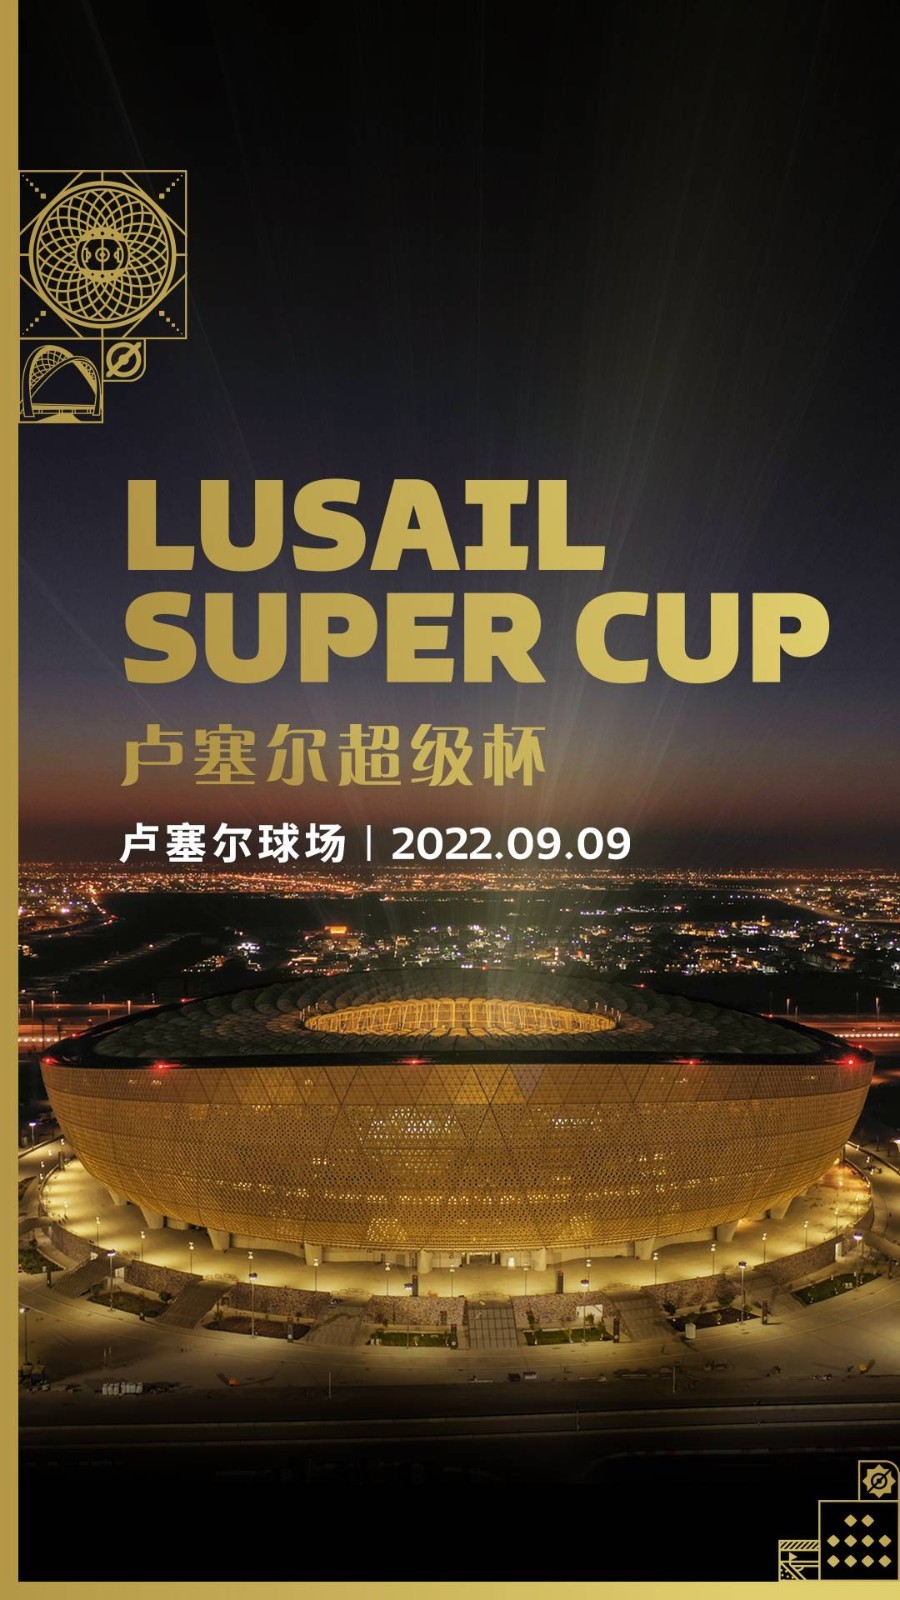 卡塔尔世界杯决赛球场将在9月9日举办卢塞尔超级杯